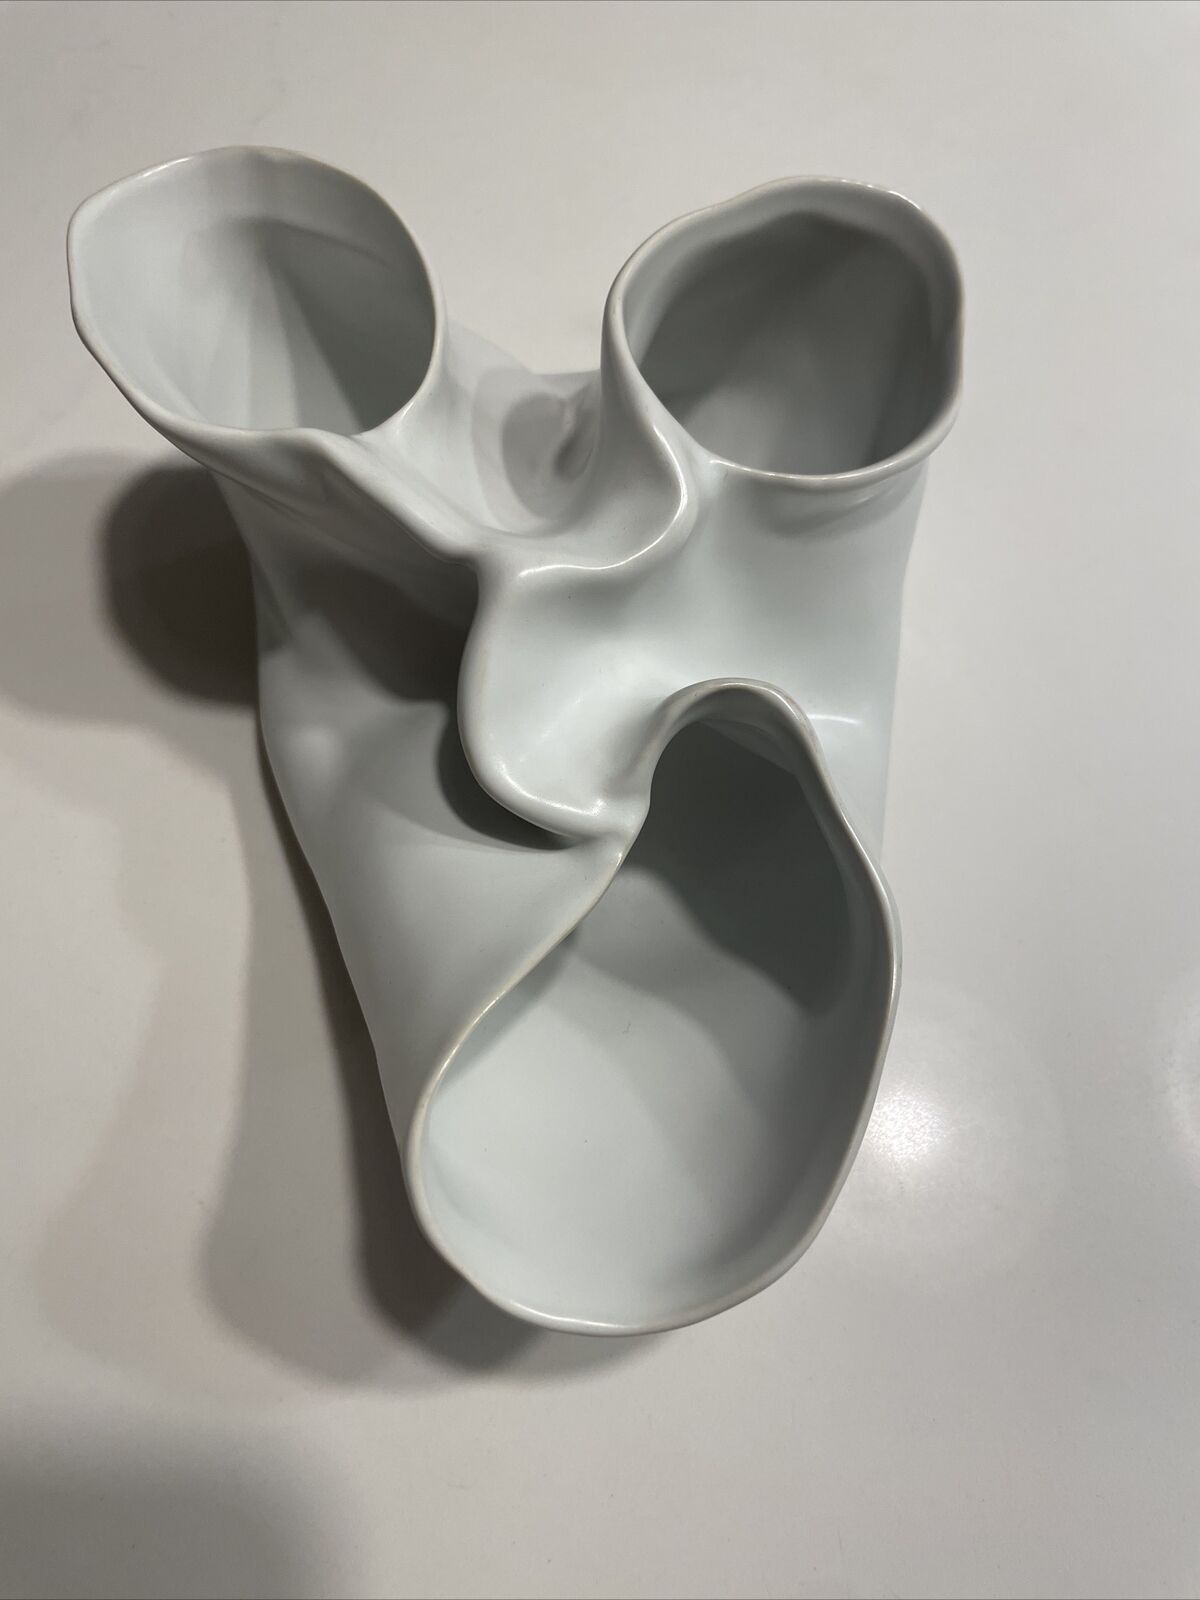 Unique Rare Objet d'art From D & M Belgium Matte Heart Shaped Vase Pottery Heart